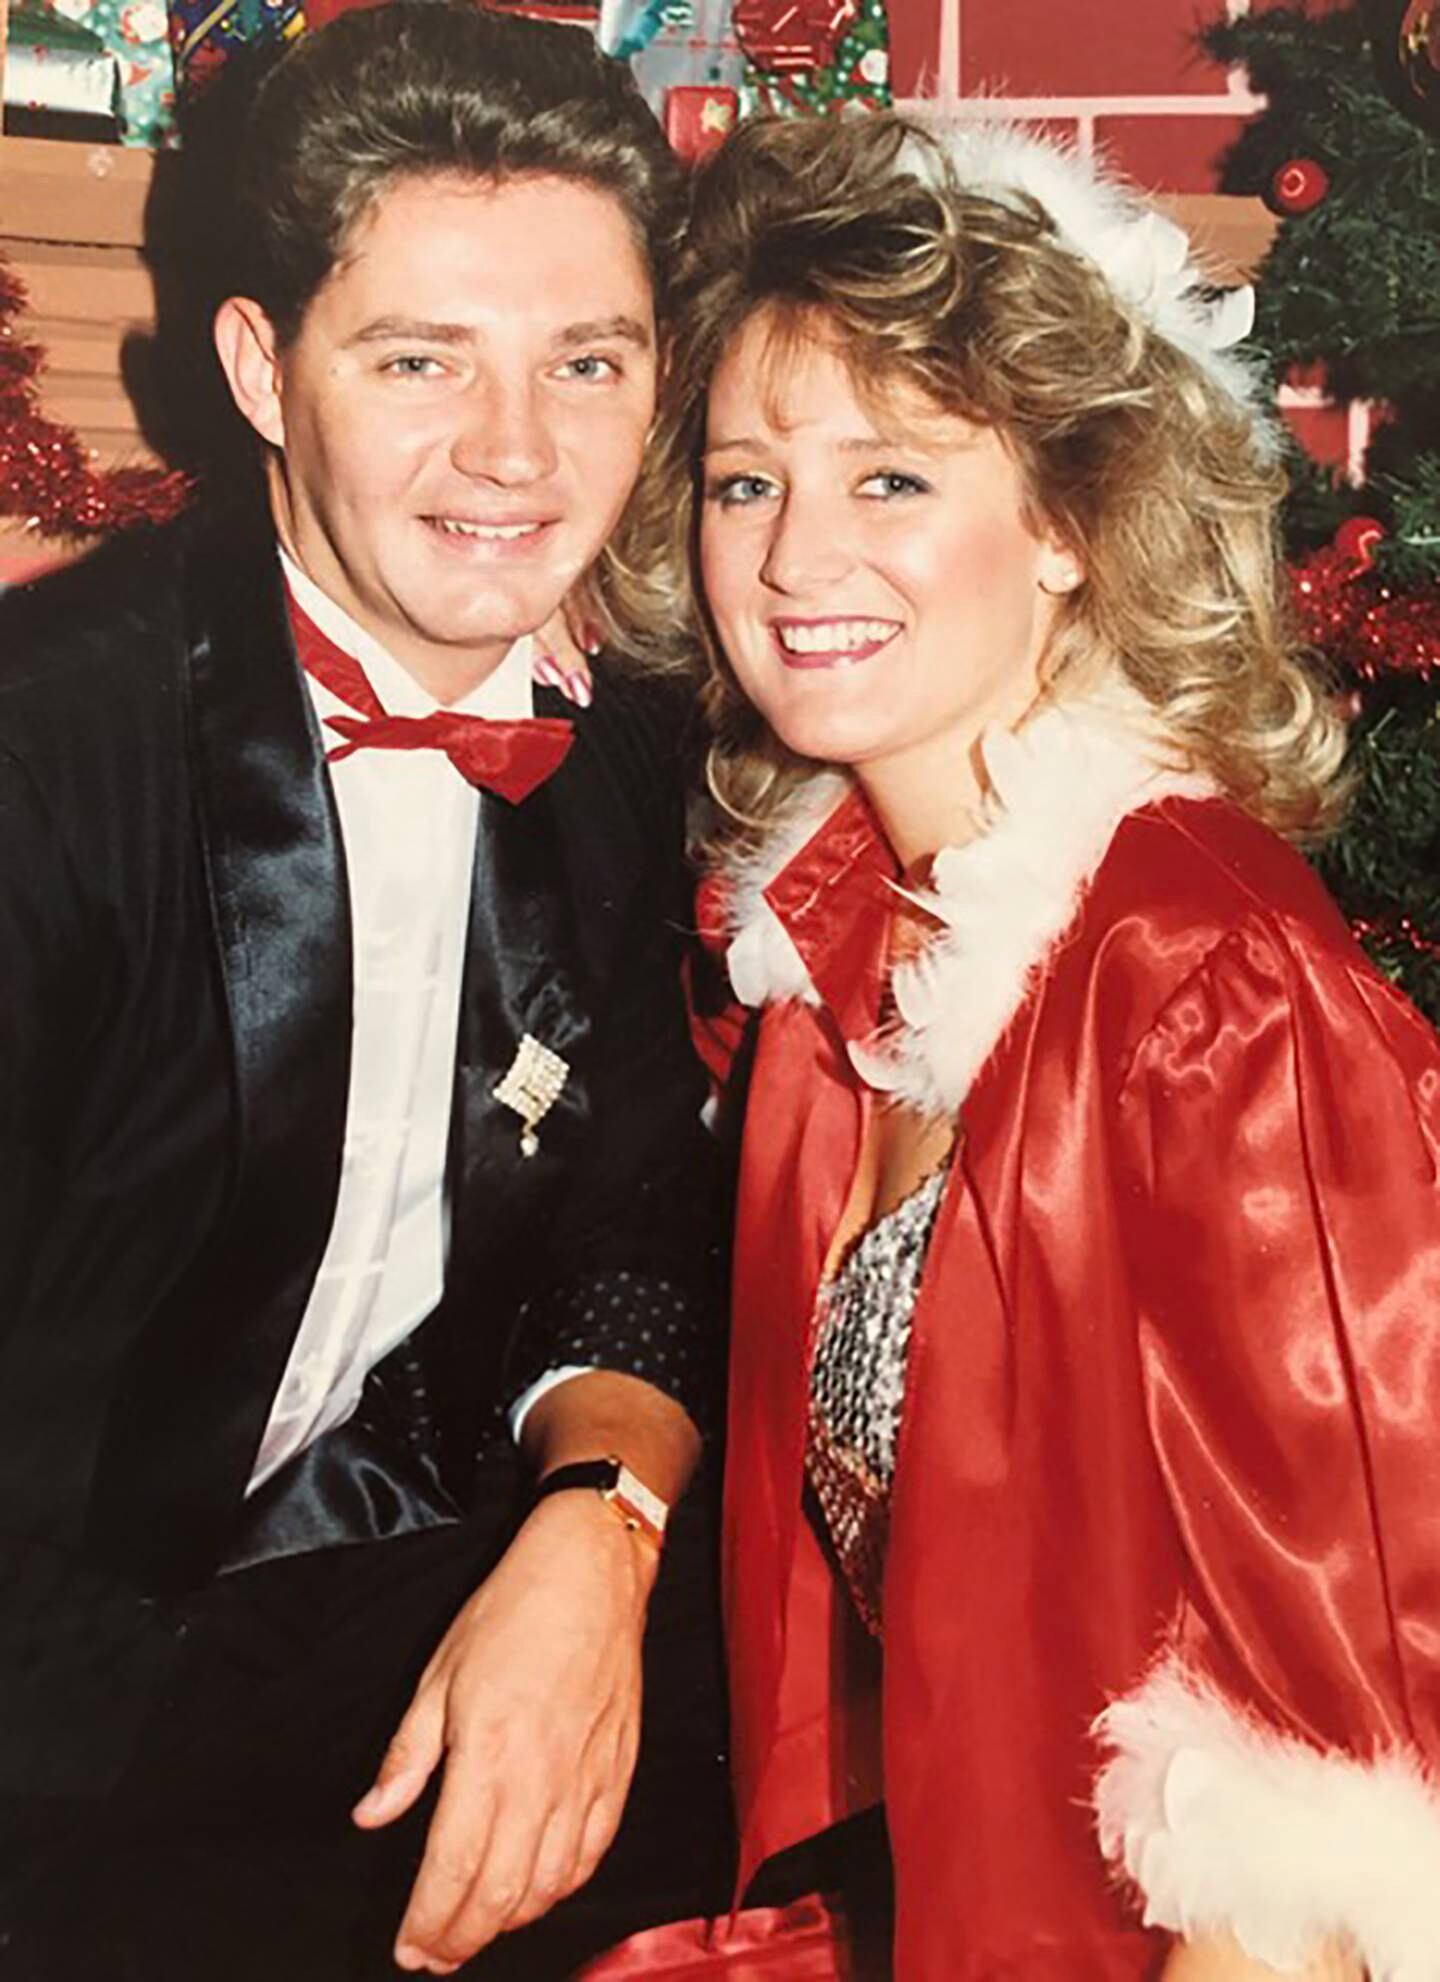 Michelle Brown et Mark Lloyd, un duo musical qui jouait des spectacles de Noël au Dubai Hilton, posent pour un tournage festif en 1987. Photo : Michelle Brown